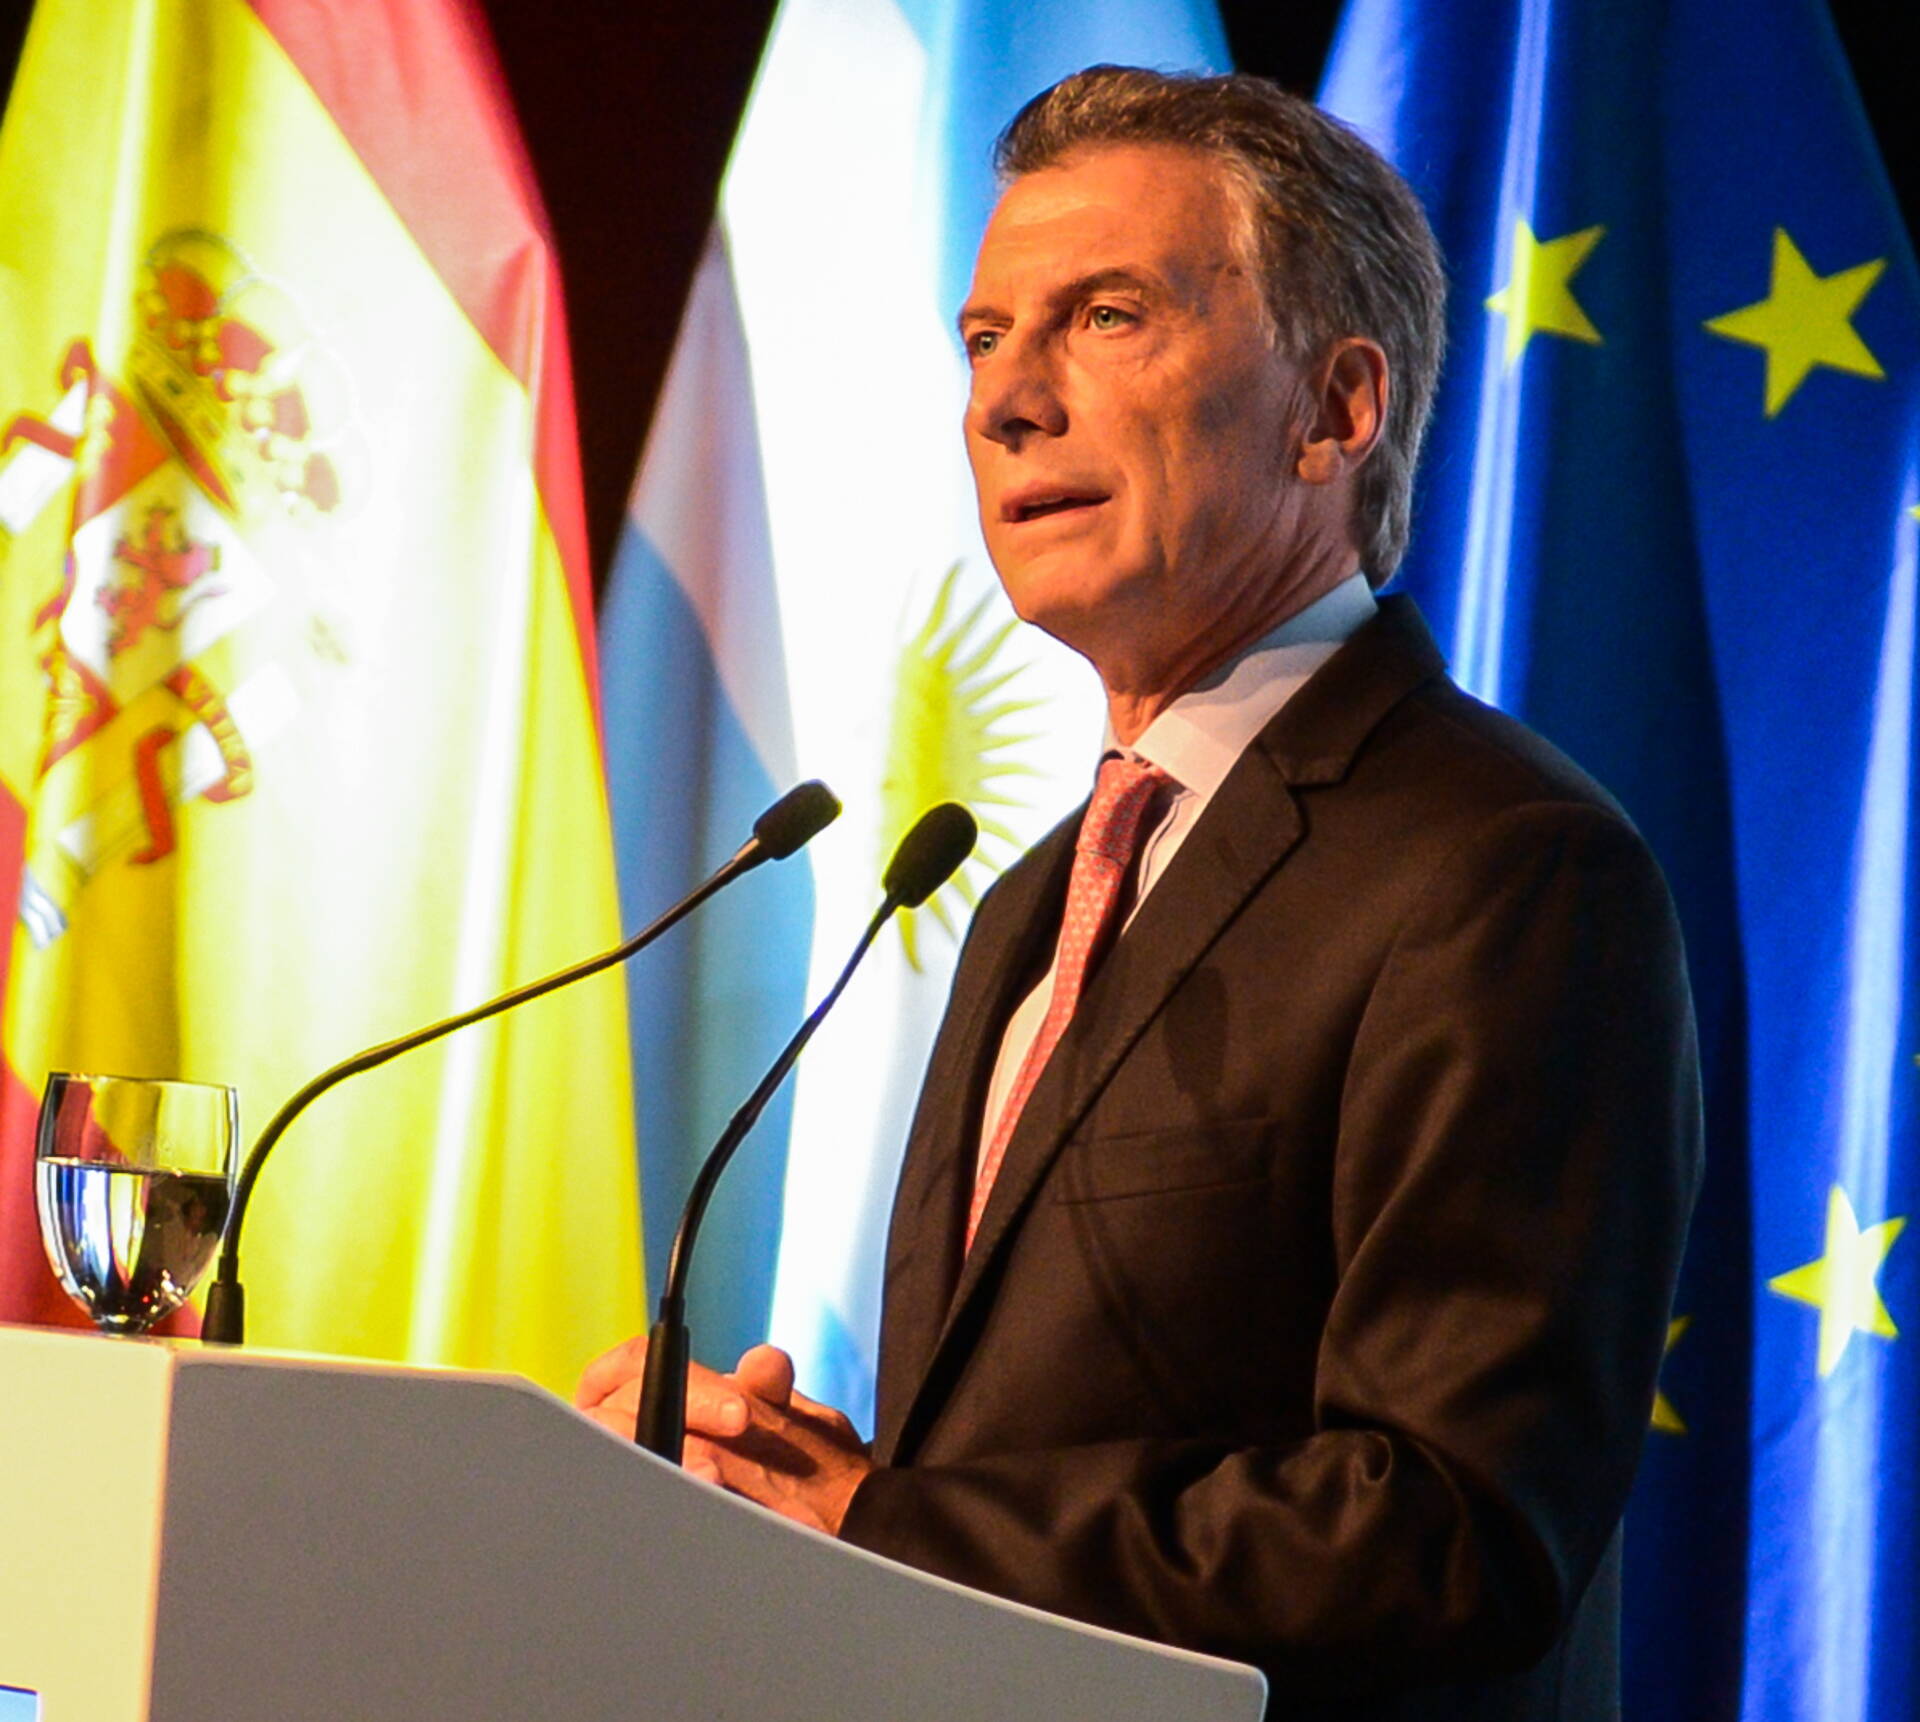 Macri: Estamos poniendo todo de nuestra parte para alcanzar un acuerdo UE-Mercosur